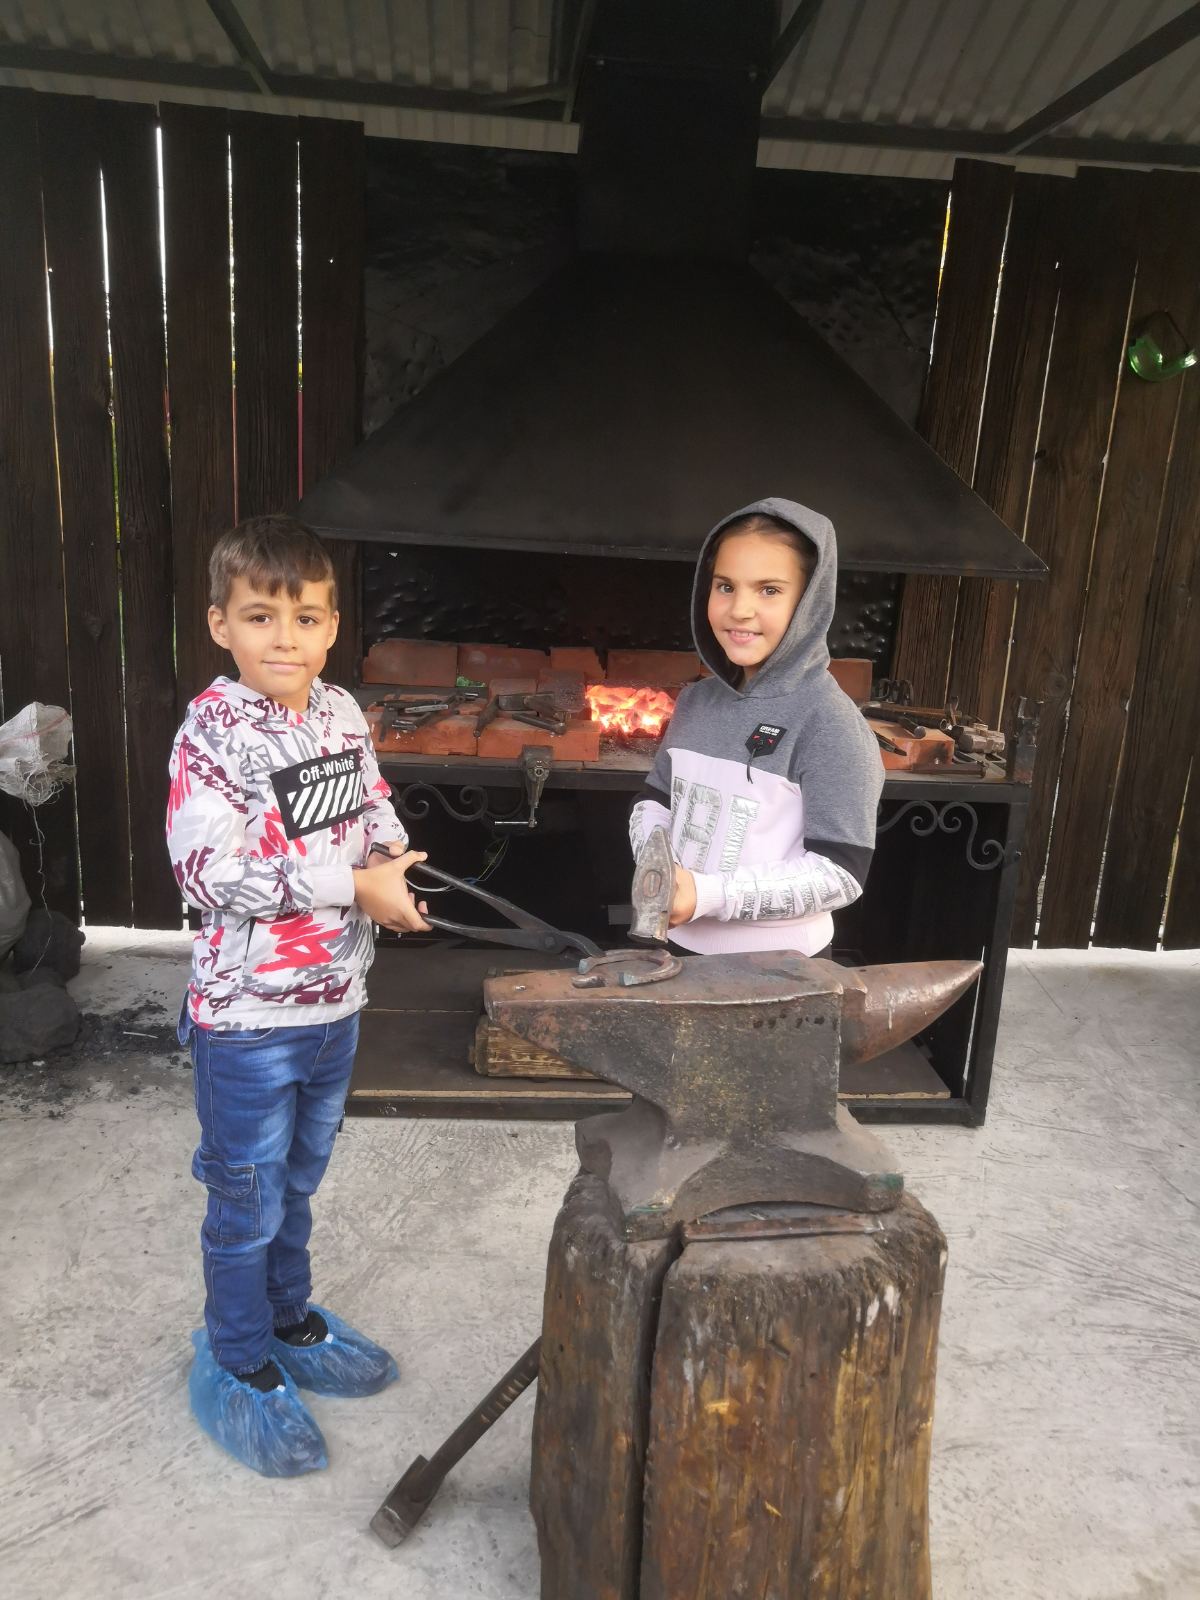 Юные кузнечане посетили   музей кузнечного ремесла "Кузнецкое подворье"